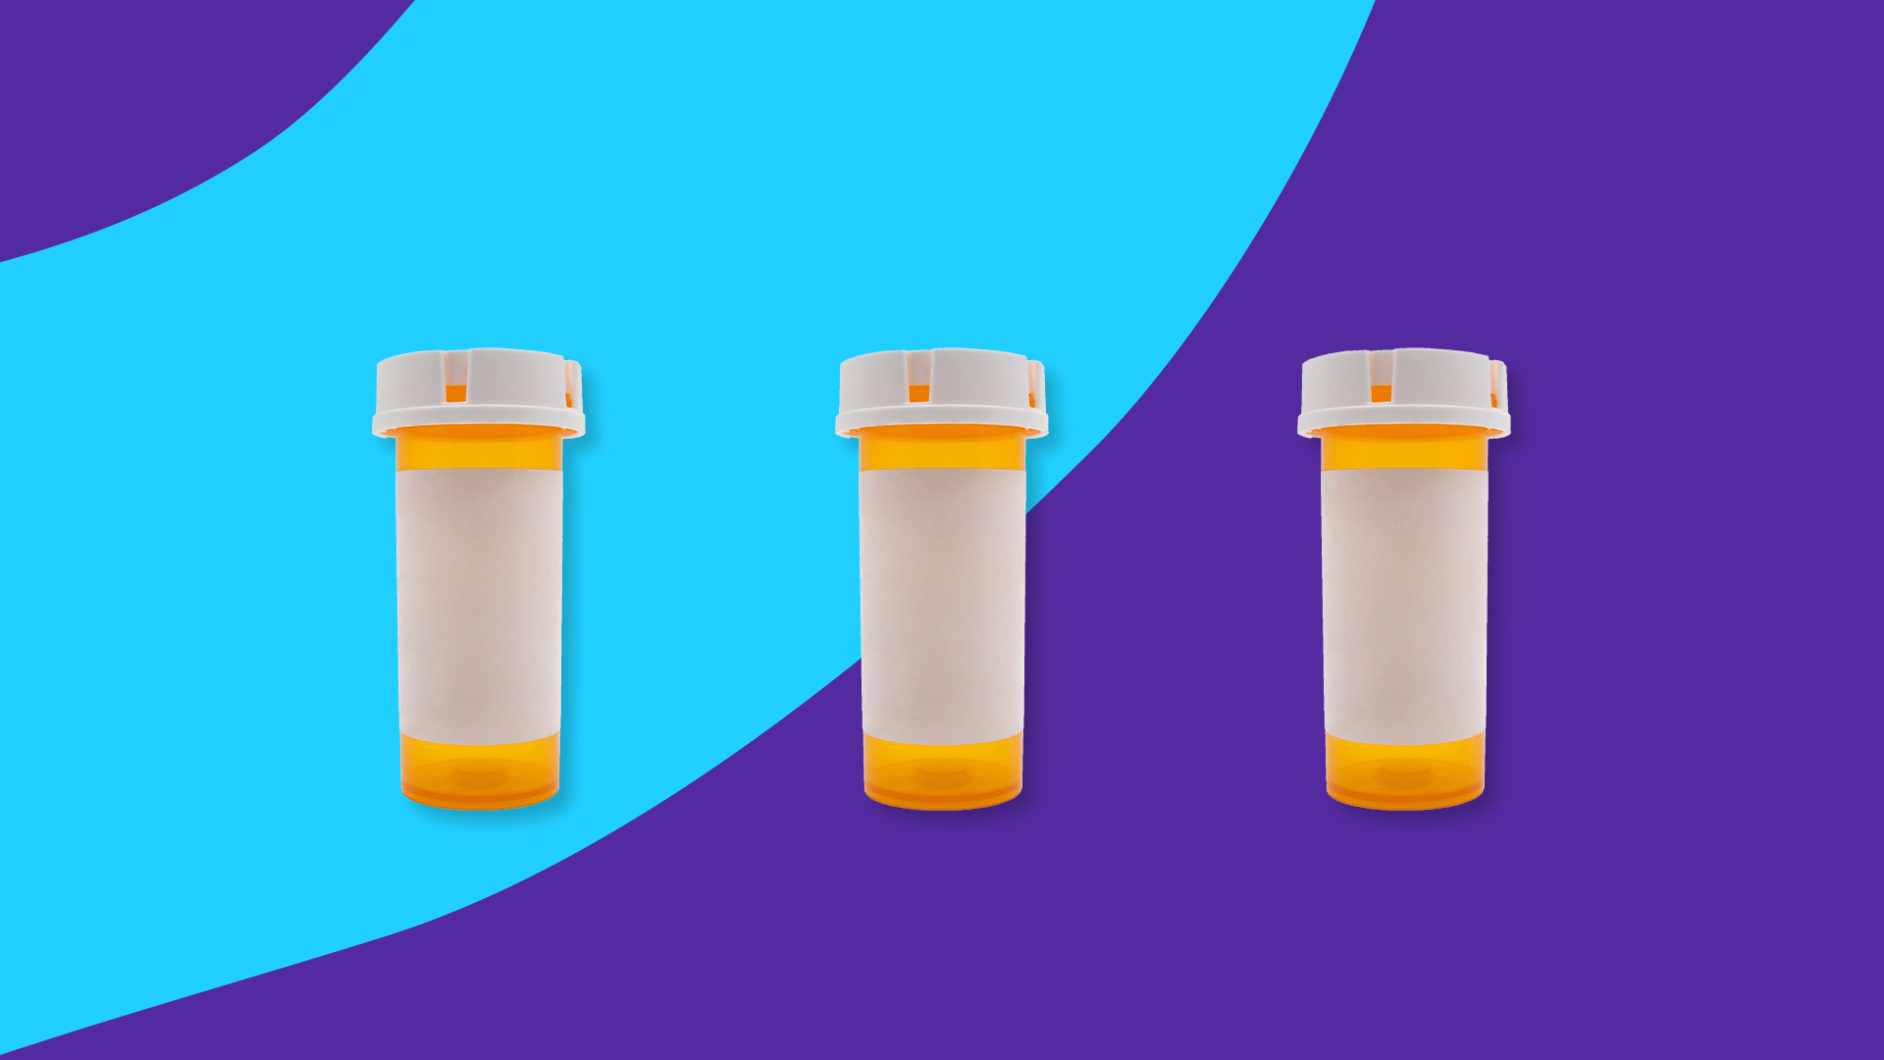 Rx pill bottles: Methylprednisolone (Medrol) alternatives